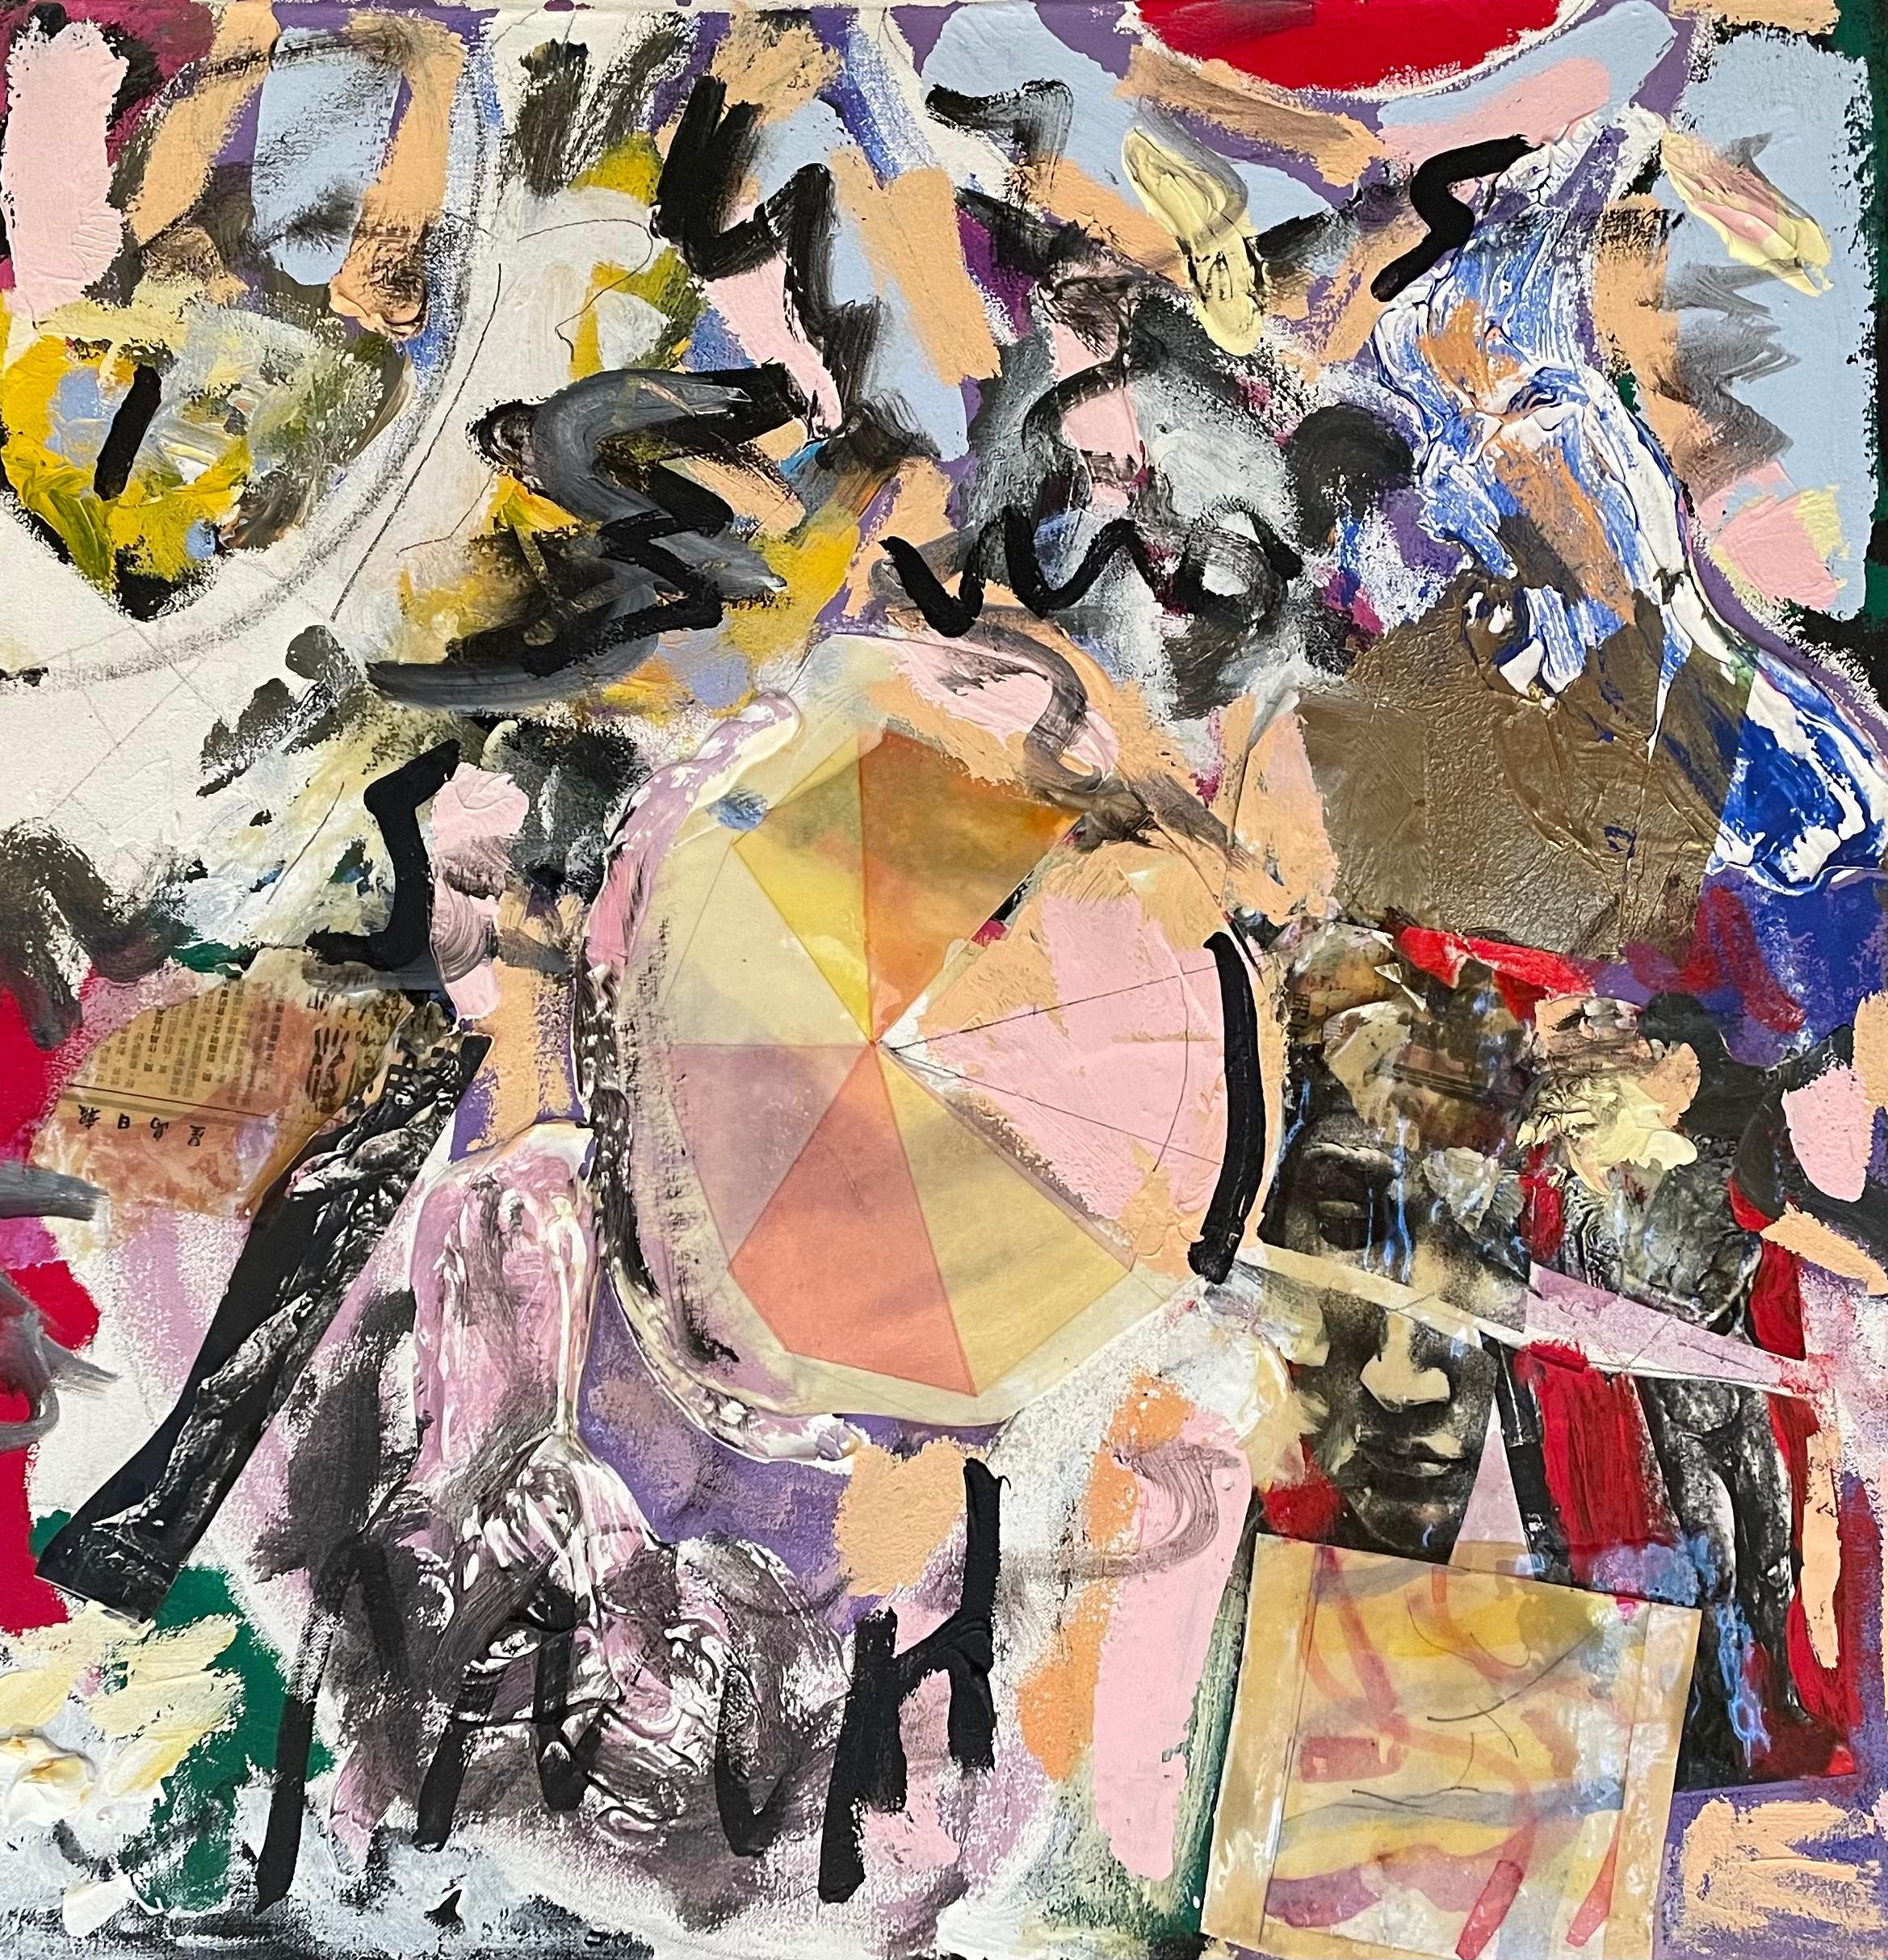 "Ser libre" Abstracto contemporáneo en técnica mixta de colores de Steven Rehfeld - Mixed Media Art de Steven H. Rehfeld